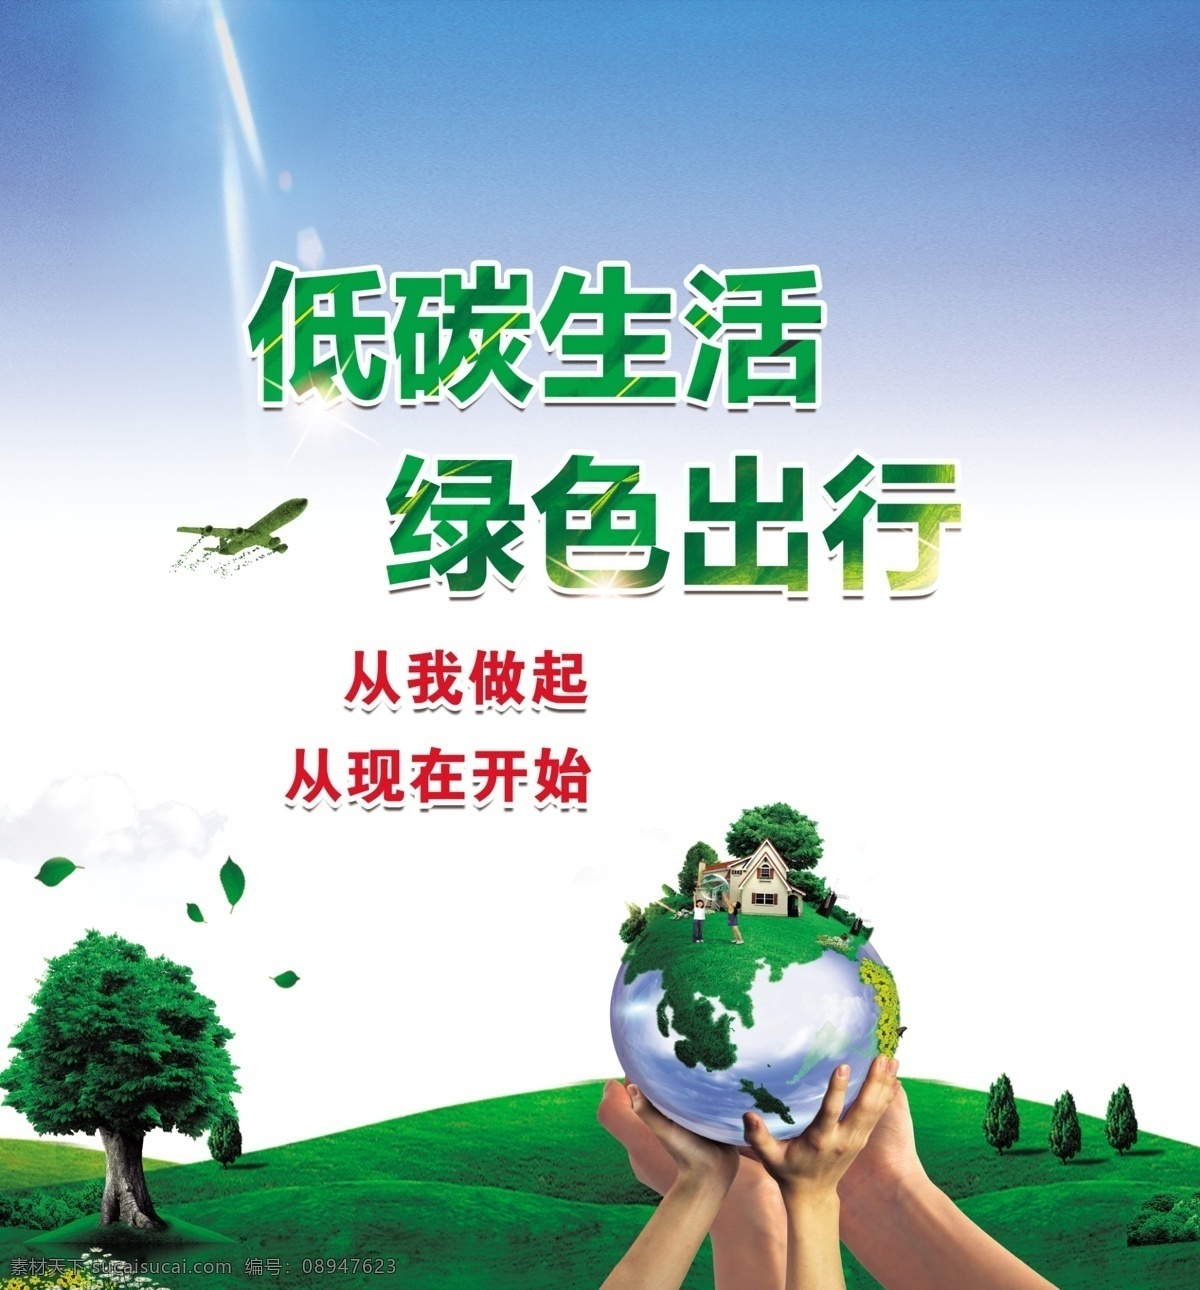 低 碳 生活 绿色 出行 绿色出行 低碳生活 公益海报 公益宣传 保护家园 自行车 蝴蝶 乐符 绿叶 热气球 蓝天白云 公益